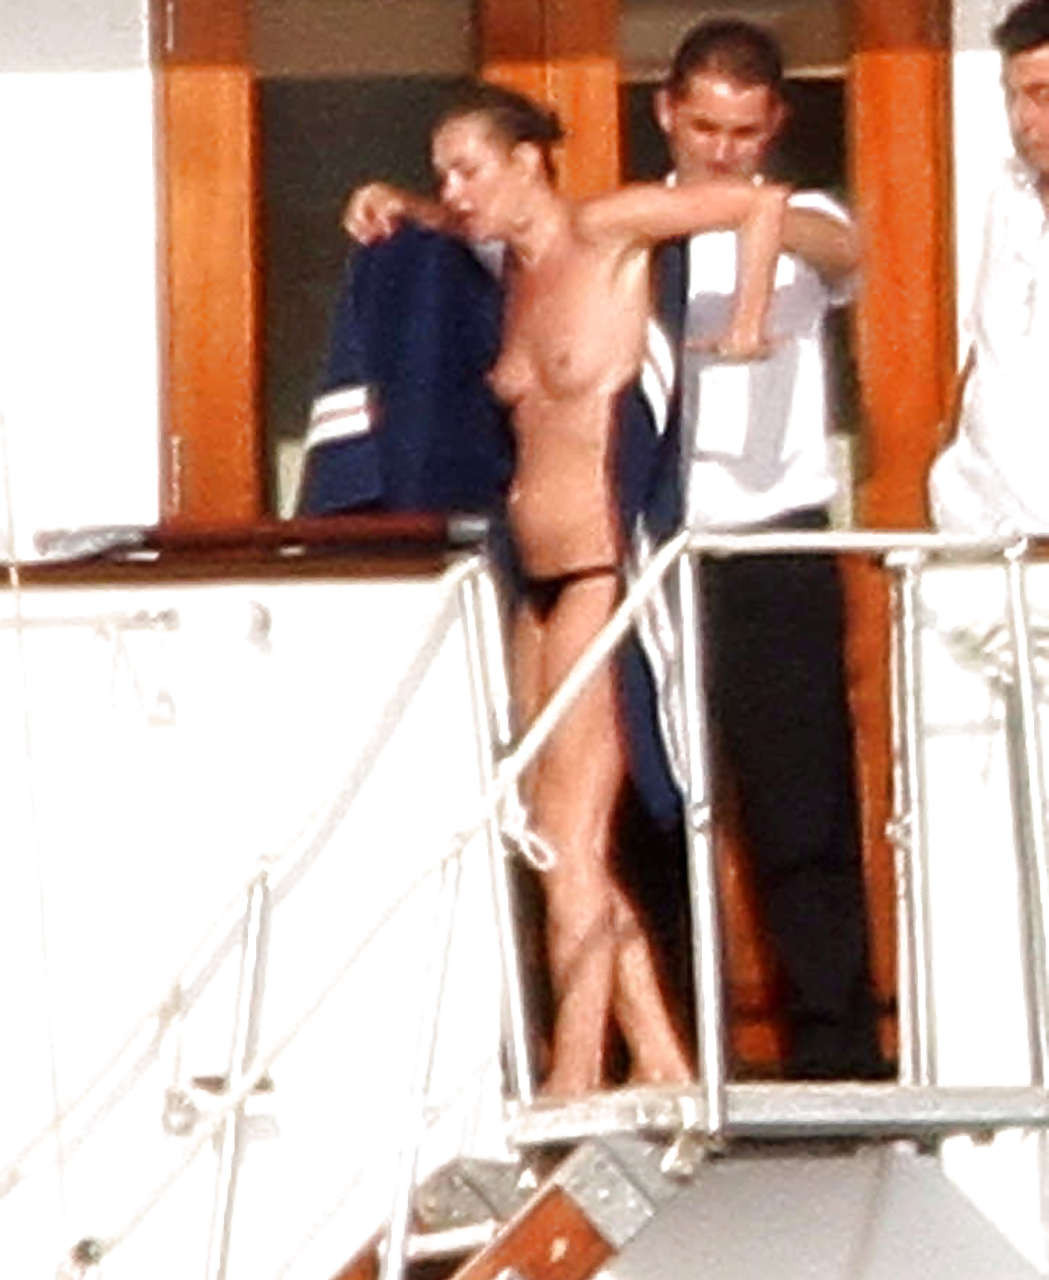 Kate Moss, seins nus, sautant d'un yacht et montrant sa culotte, photographiée par des paparazzis.
 #75290668